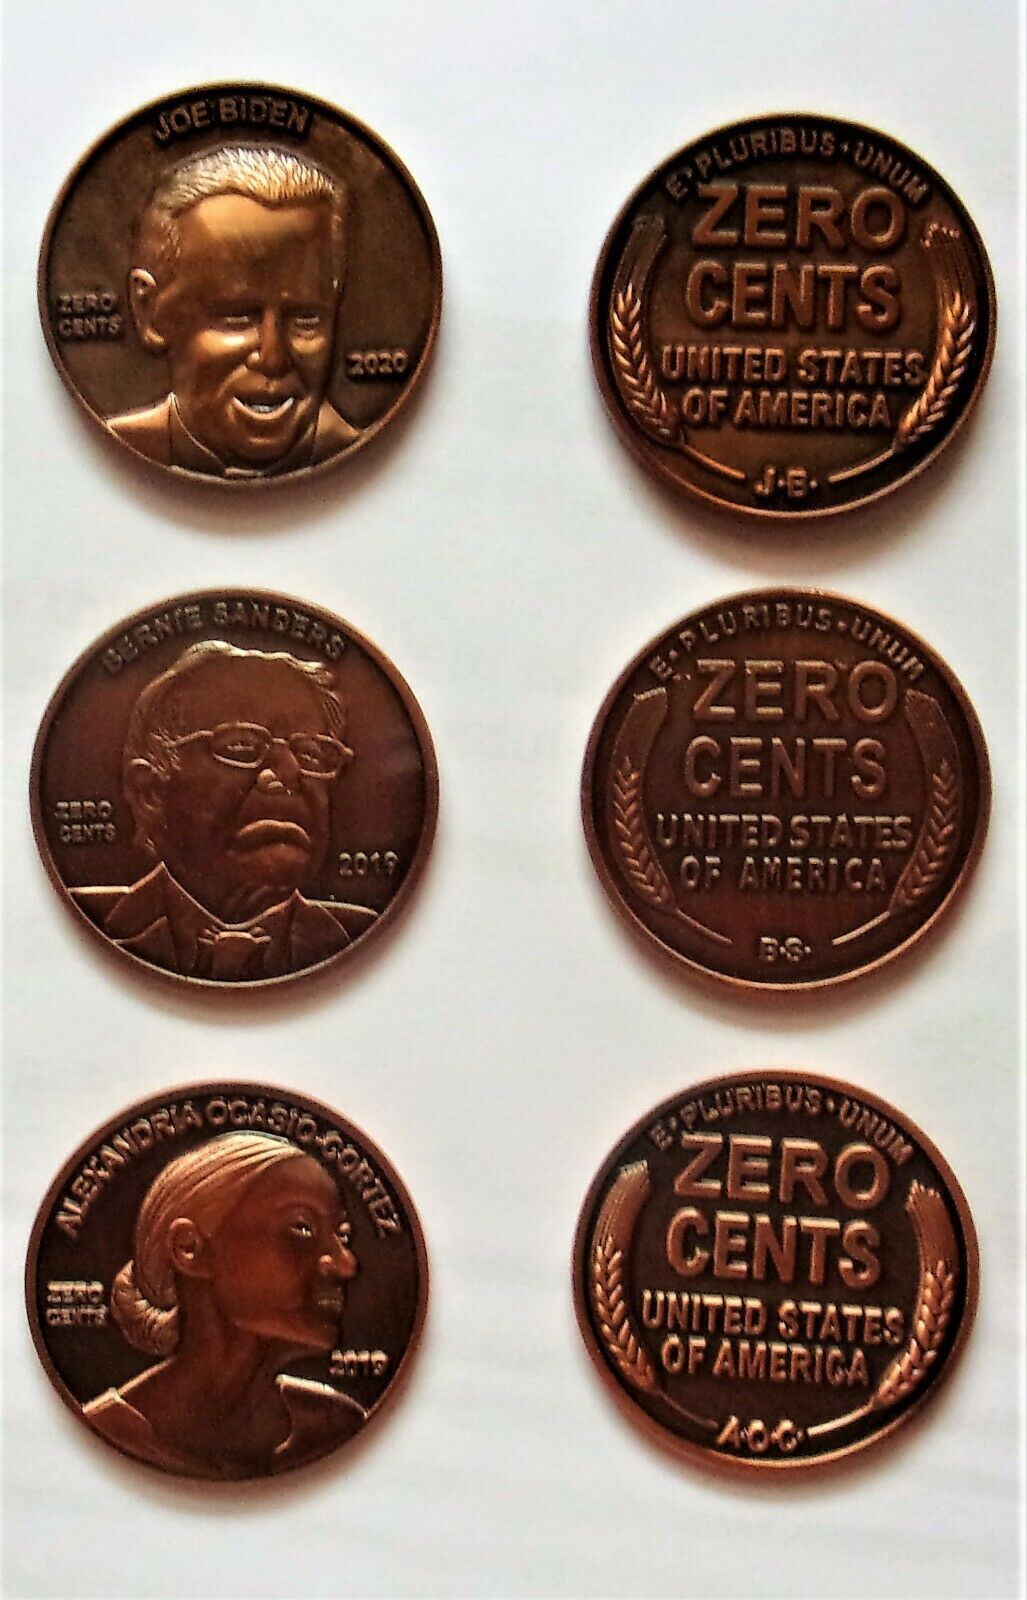 Joe Biden, Bernie Sanders Alexandria Ocasio Cortez Aoc Zero Cents Coin U.s. Gold